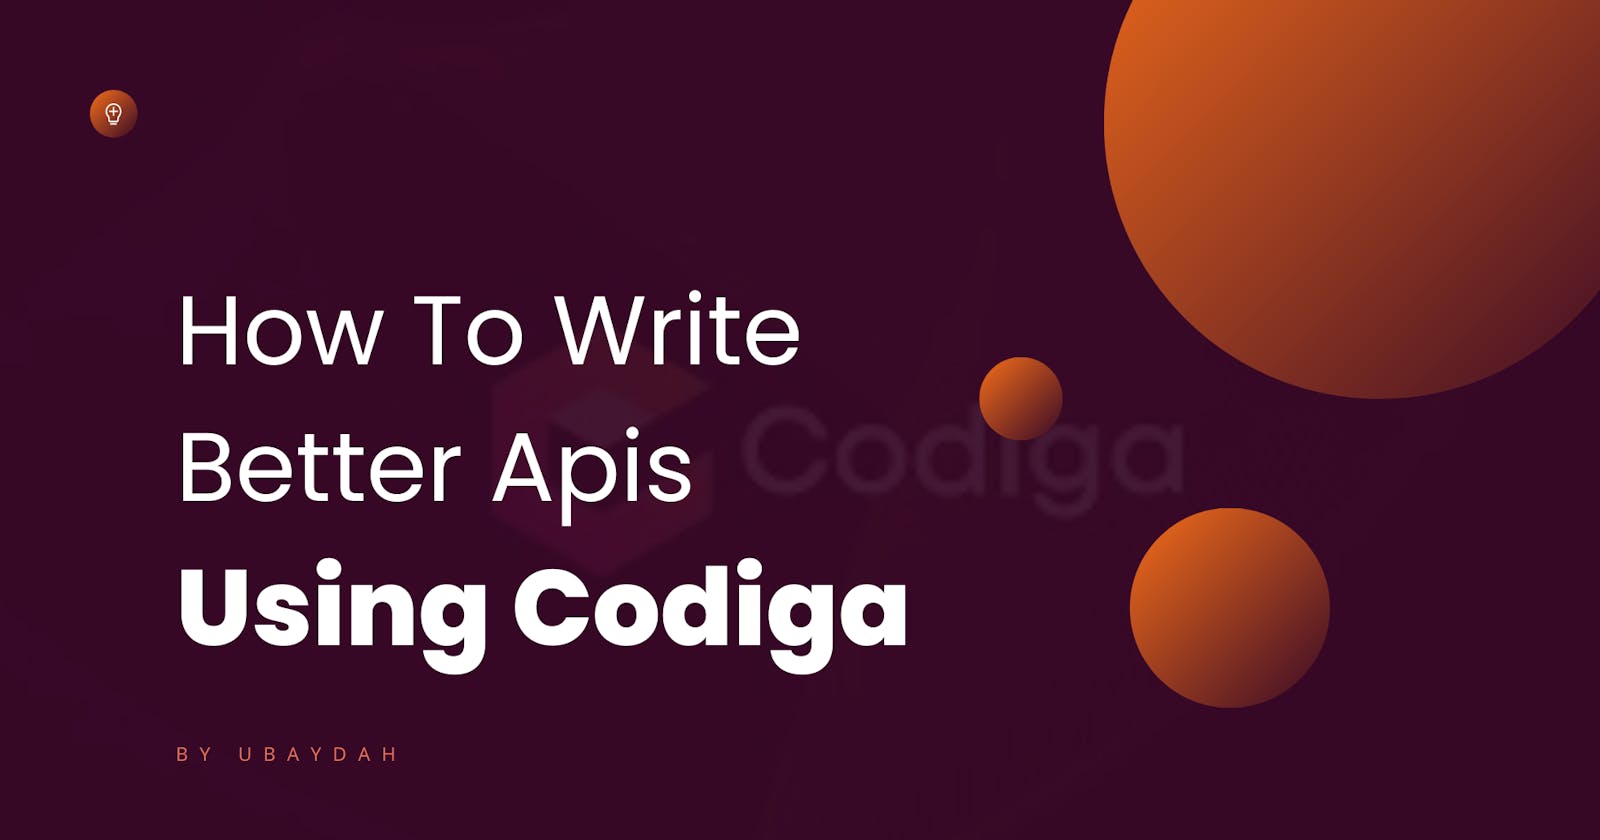 How To Write Better APIs Using Codiga